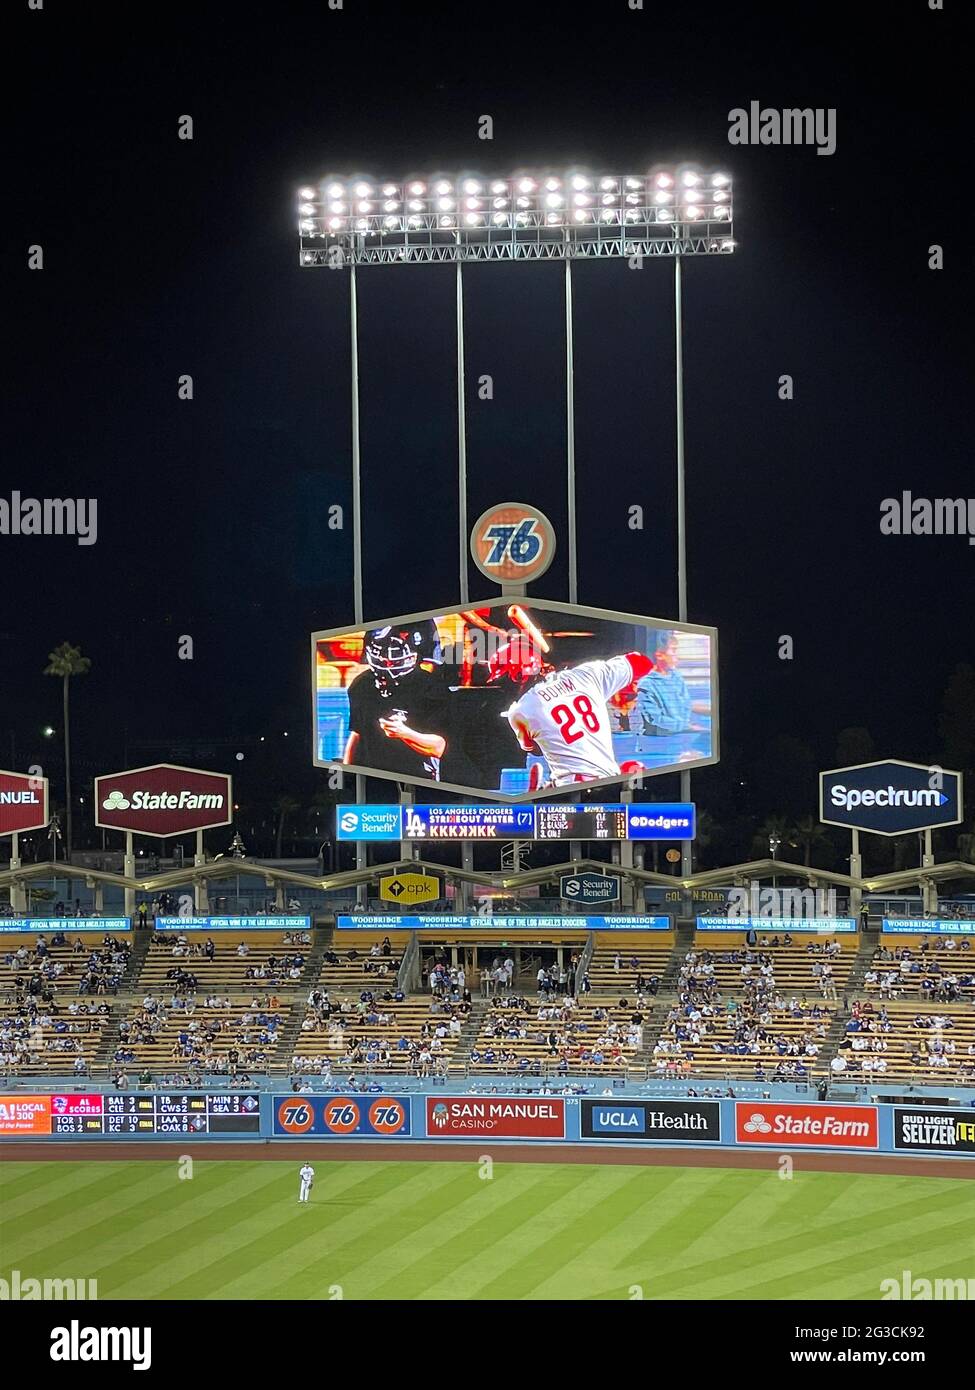 Tabellone segnapunti al Dodger Stadium con annunci e grande schermo video che mostra un battter per i Philadelphia Phillies di Los Angeles, California Foto Stock